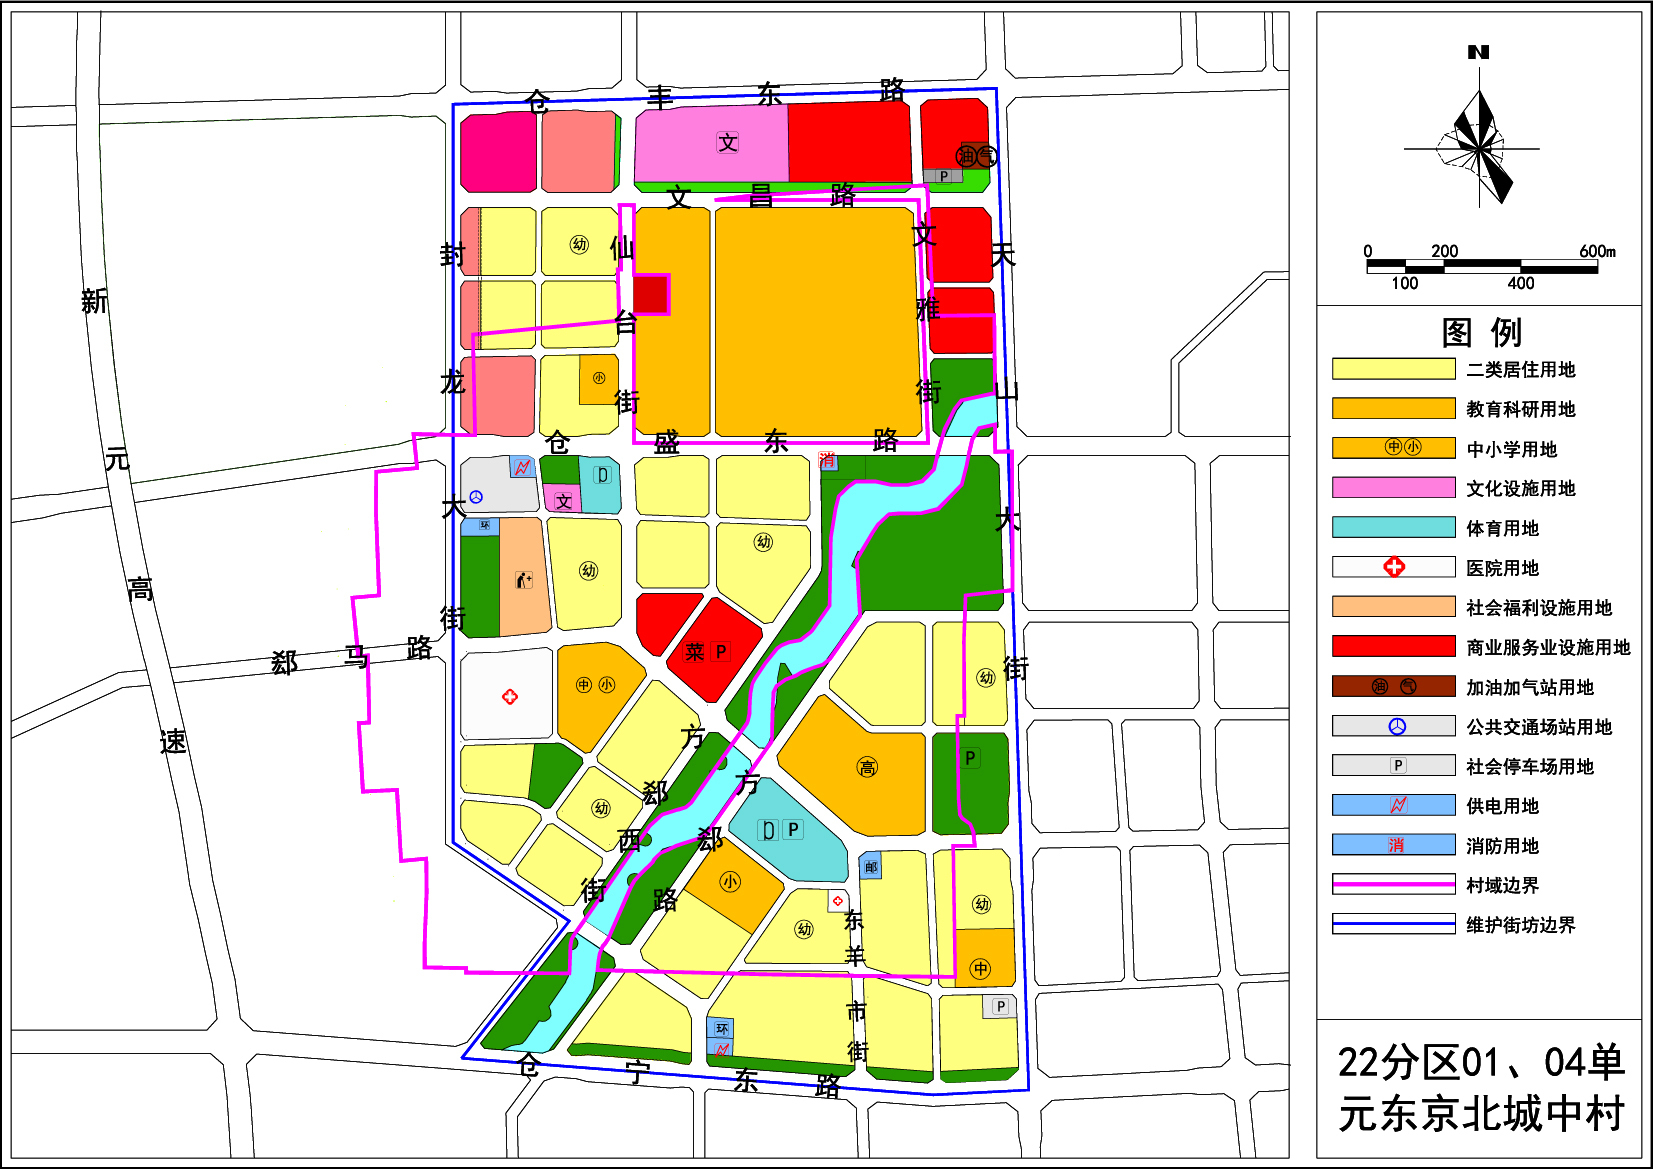 石家庄多地块控规公示涉及7大城改试点项目